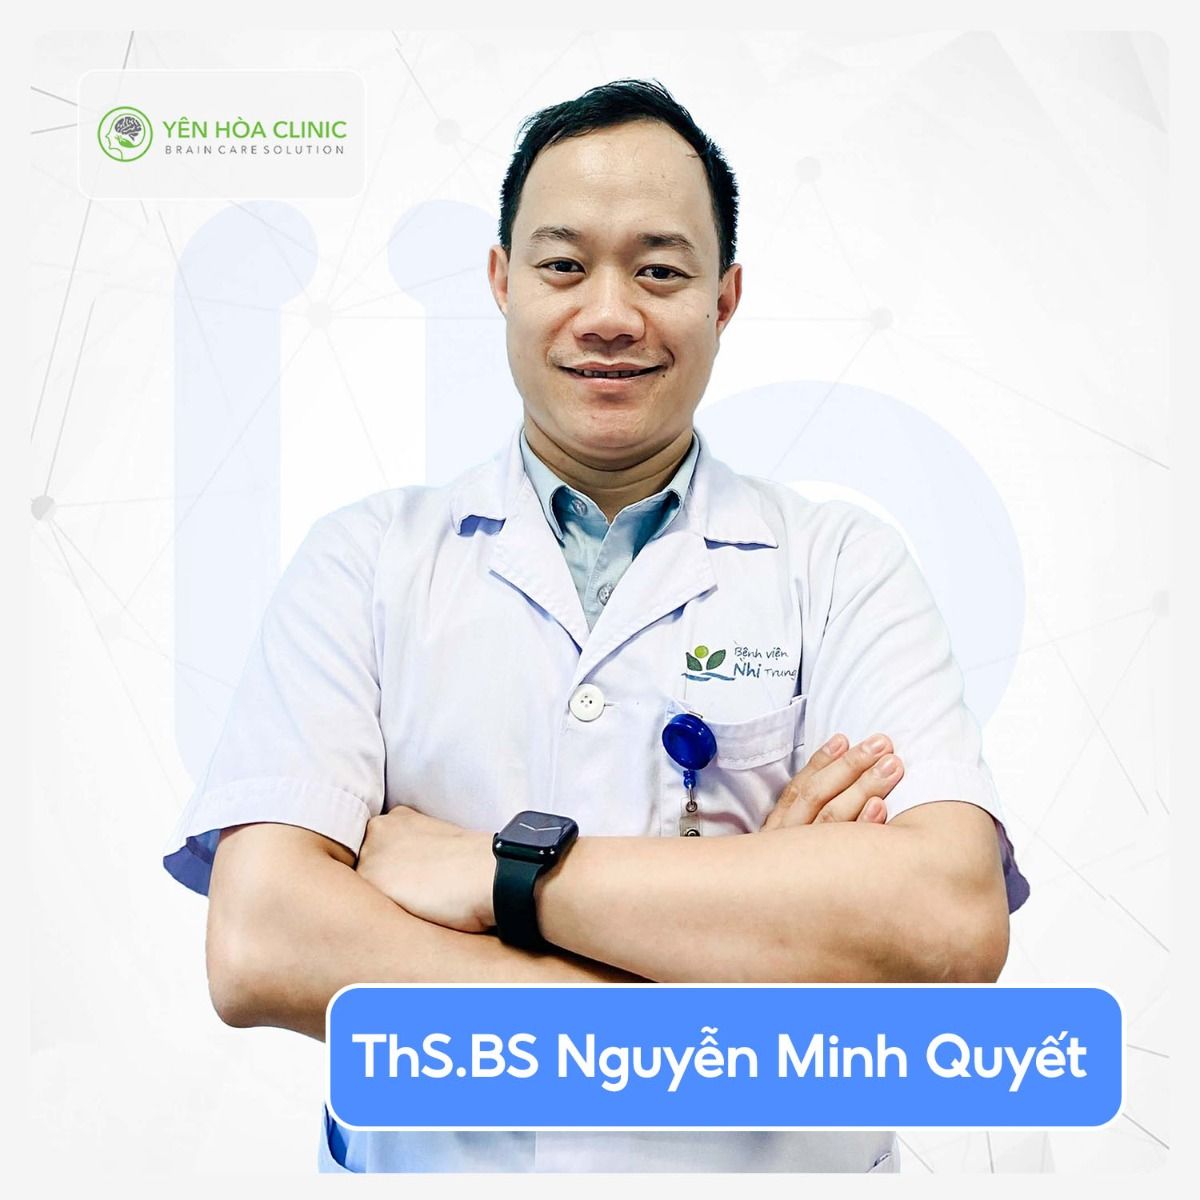 Khám & tư vấn tâm lý cùng ThS.BS Nguyễn Minh Quyết